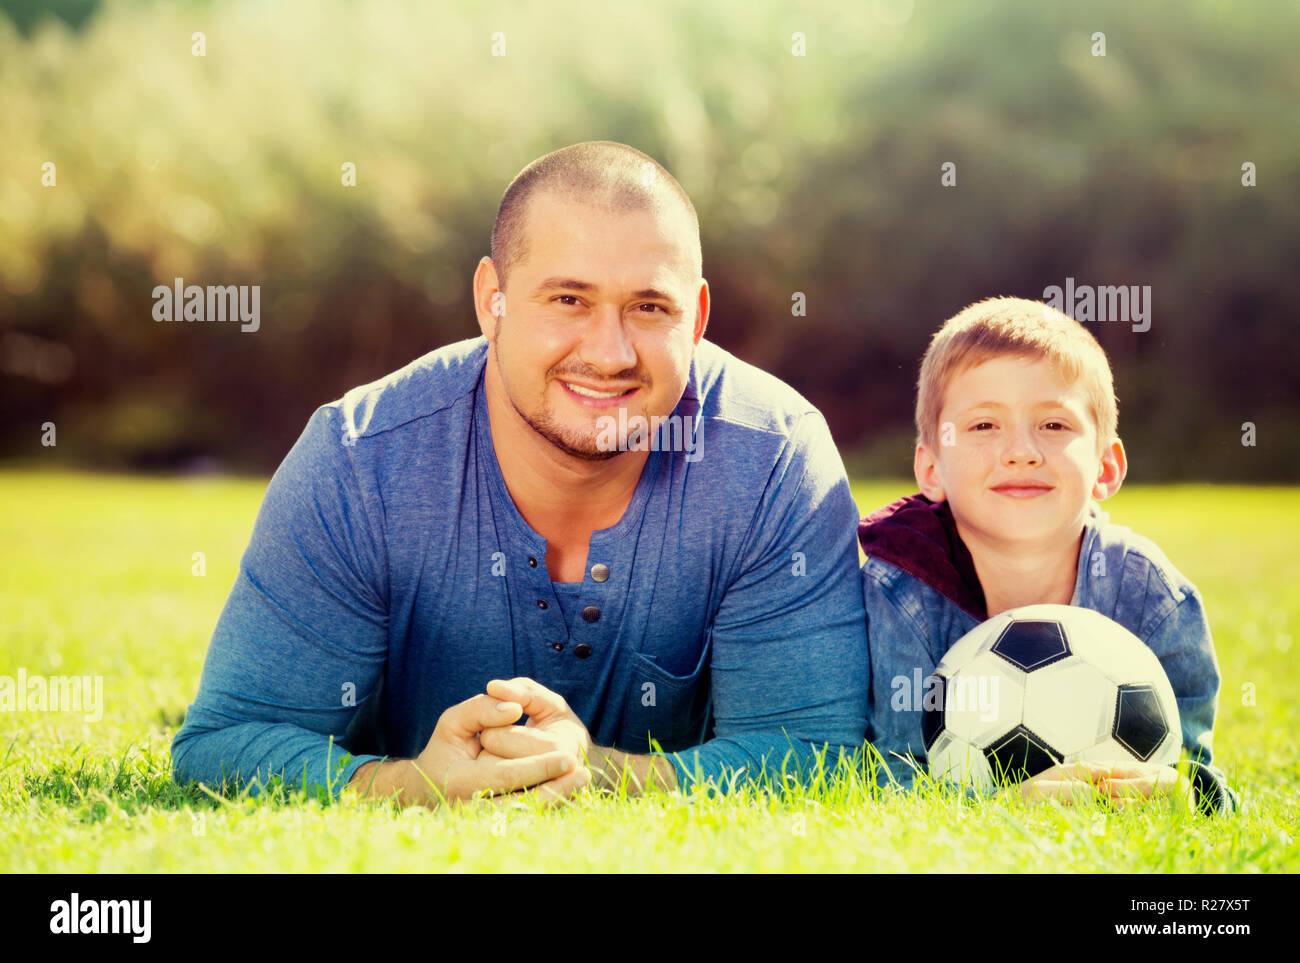 Freundlich lächelnden Teenager Sohn und Vater im Gras liegend zusammen mit Fußball-Ball. Fokus auf den Menschen Stockfoto